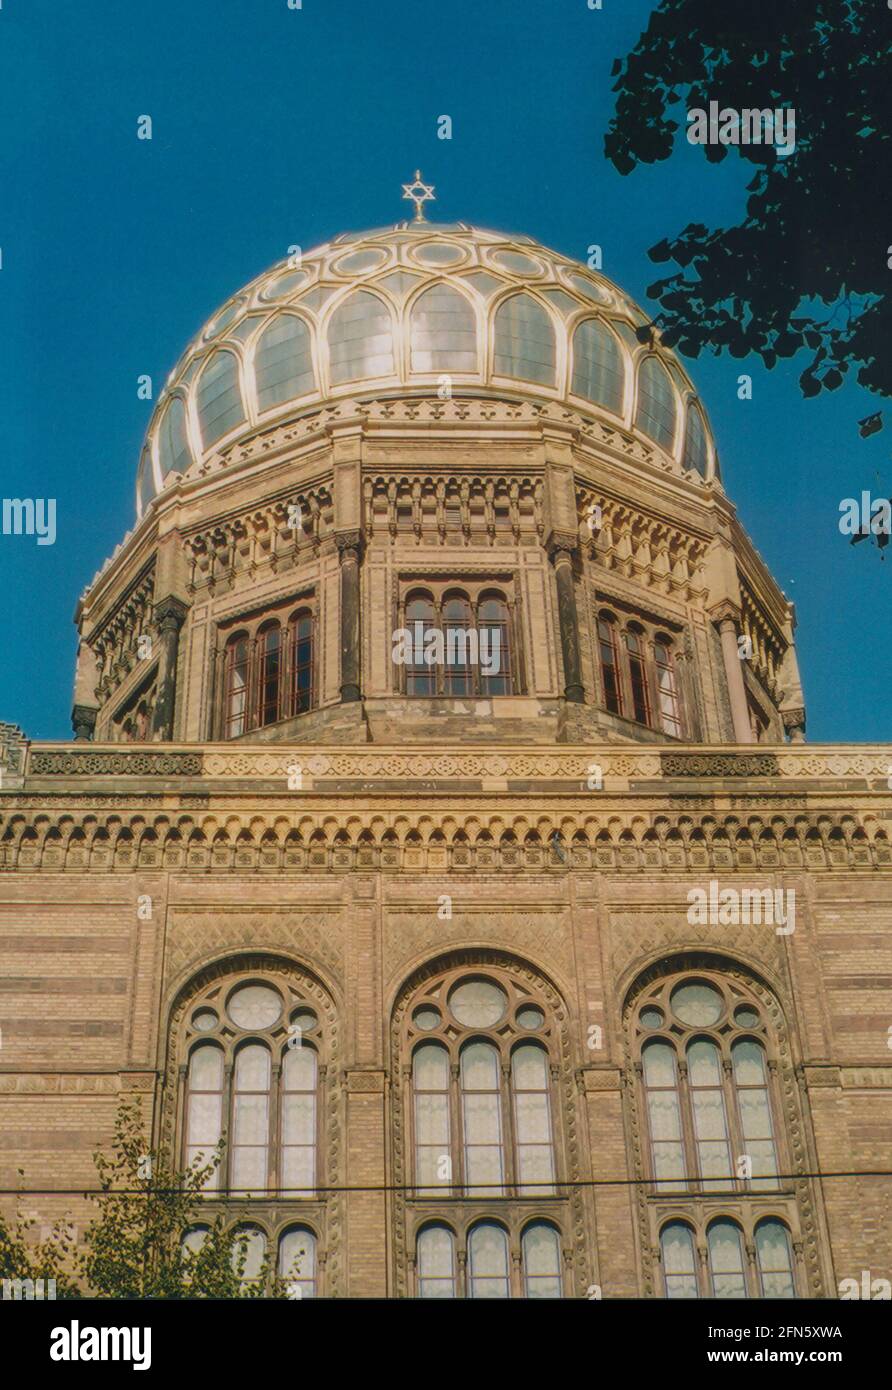 Nouvelle synagogue Berlin - Centrum Judaicum dans Oranienburger Strasse à Berlin, Allemagne, Europe - image d'archives de CA. 2006 Banque D'Images